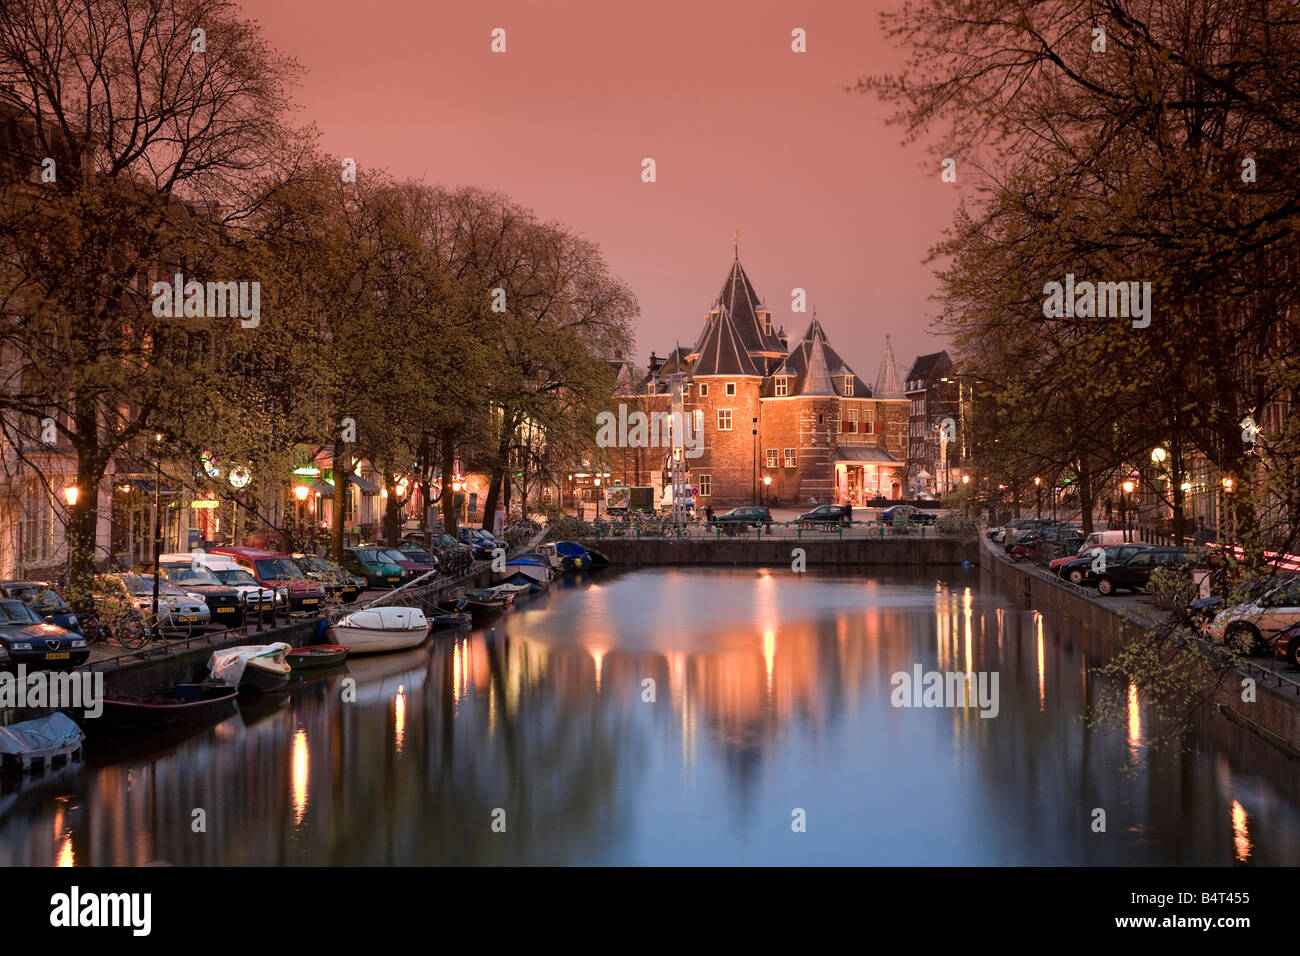 Kloveniers Burgwal canal et Waag bâtiment historique, le Nieuwmarkt, Amsterdam, Pays-Bas Banque D'Images